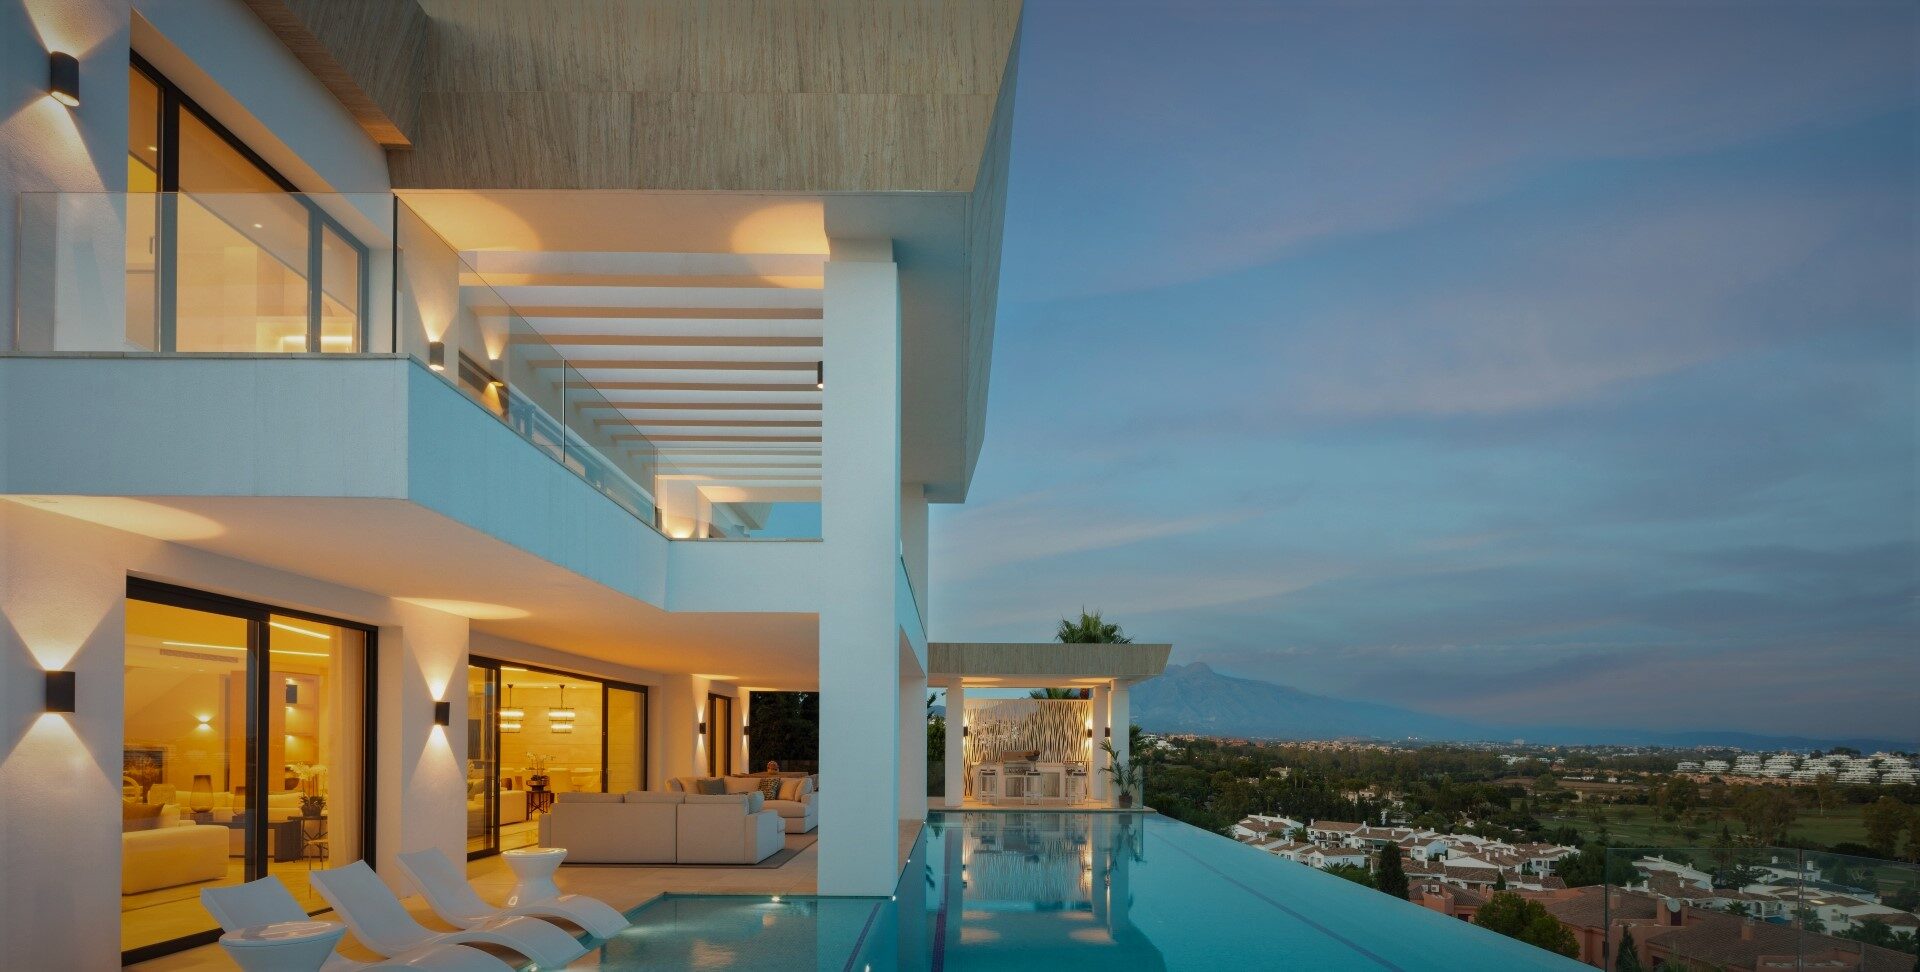 Villa moderna con impresionantes vistas panorámicas de la costa y el Mediterráneo.